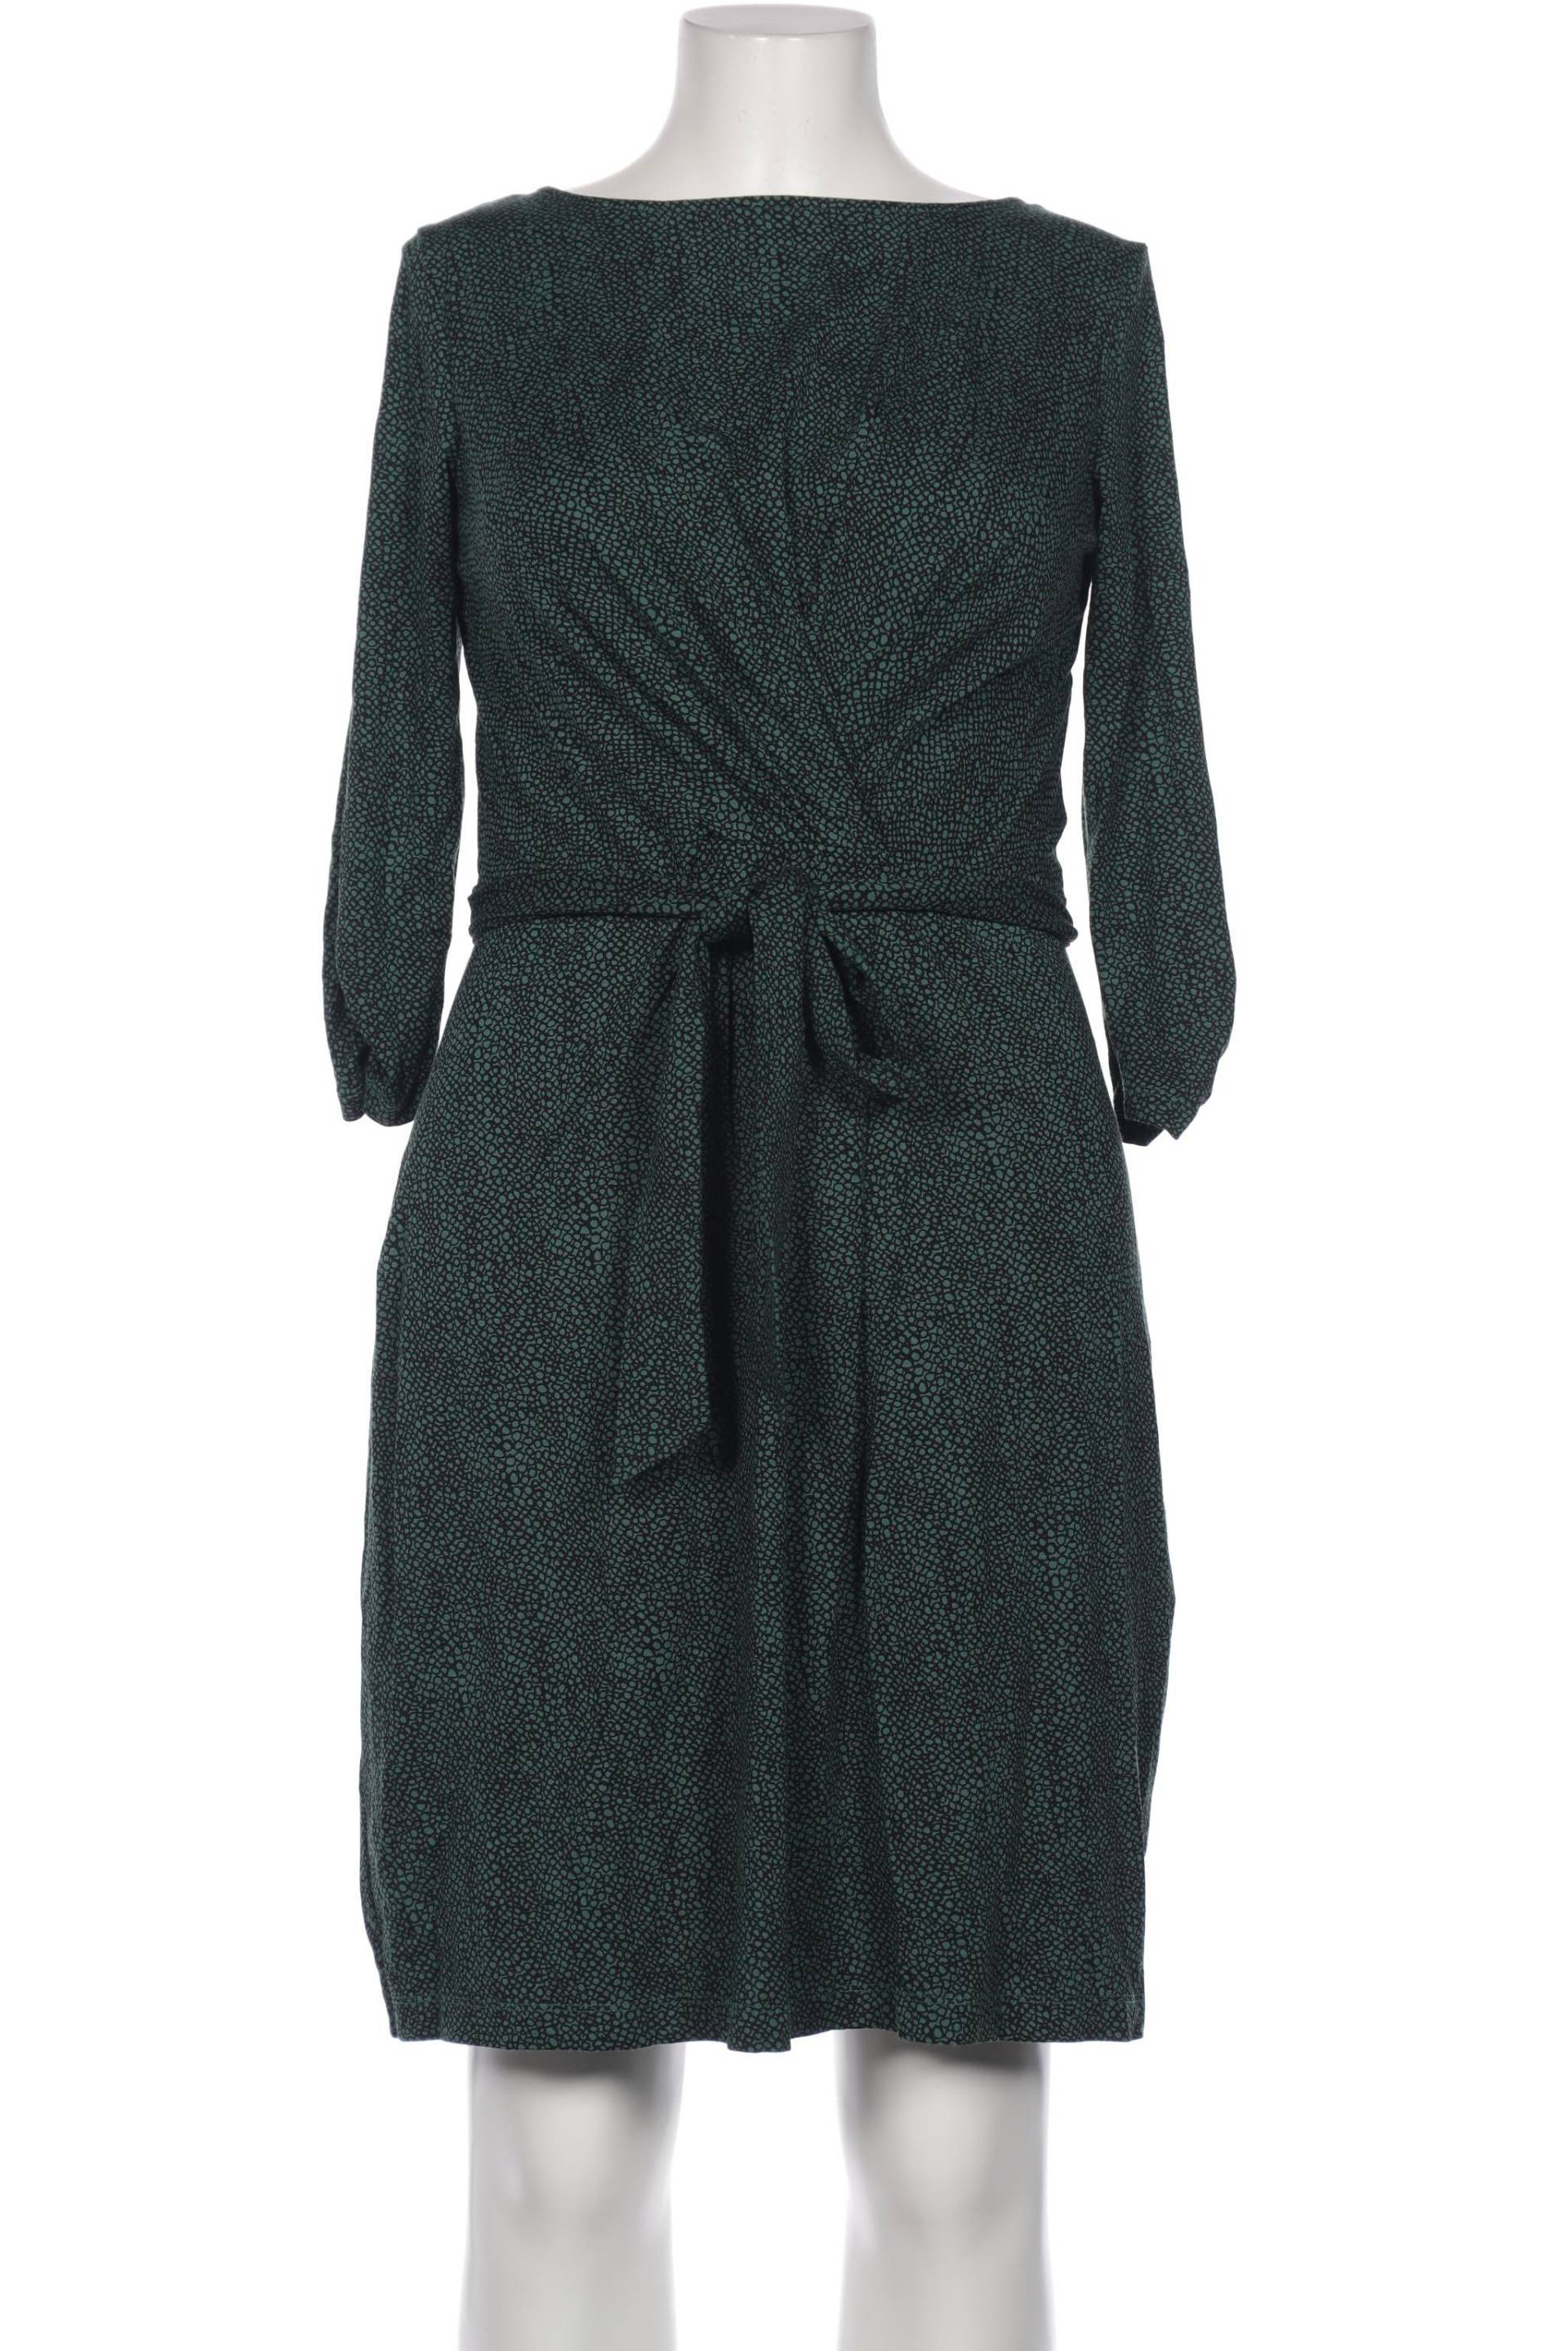 Hobbs London Damen Kleid, grün, Gr. 42 von HOBBS LONDON